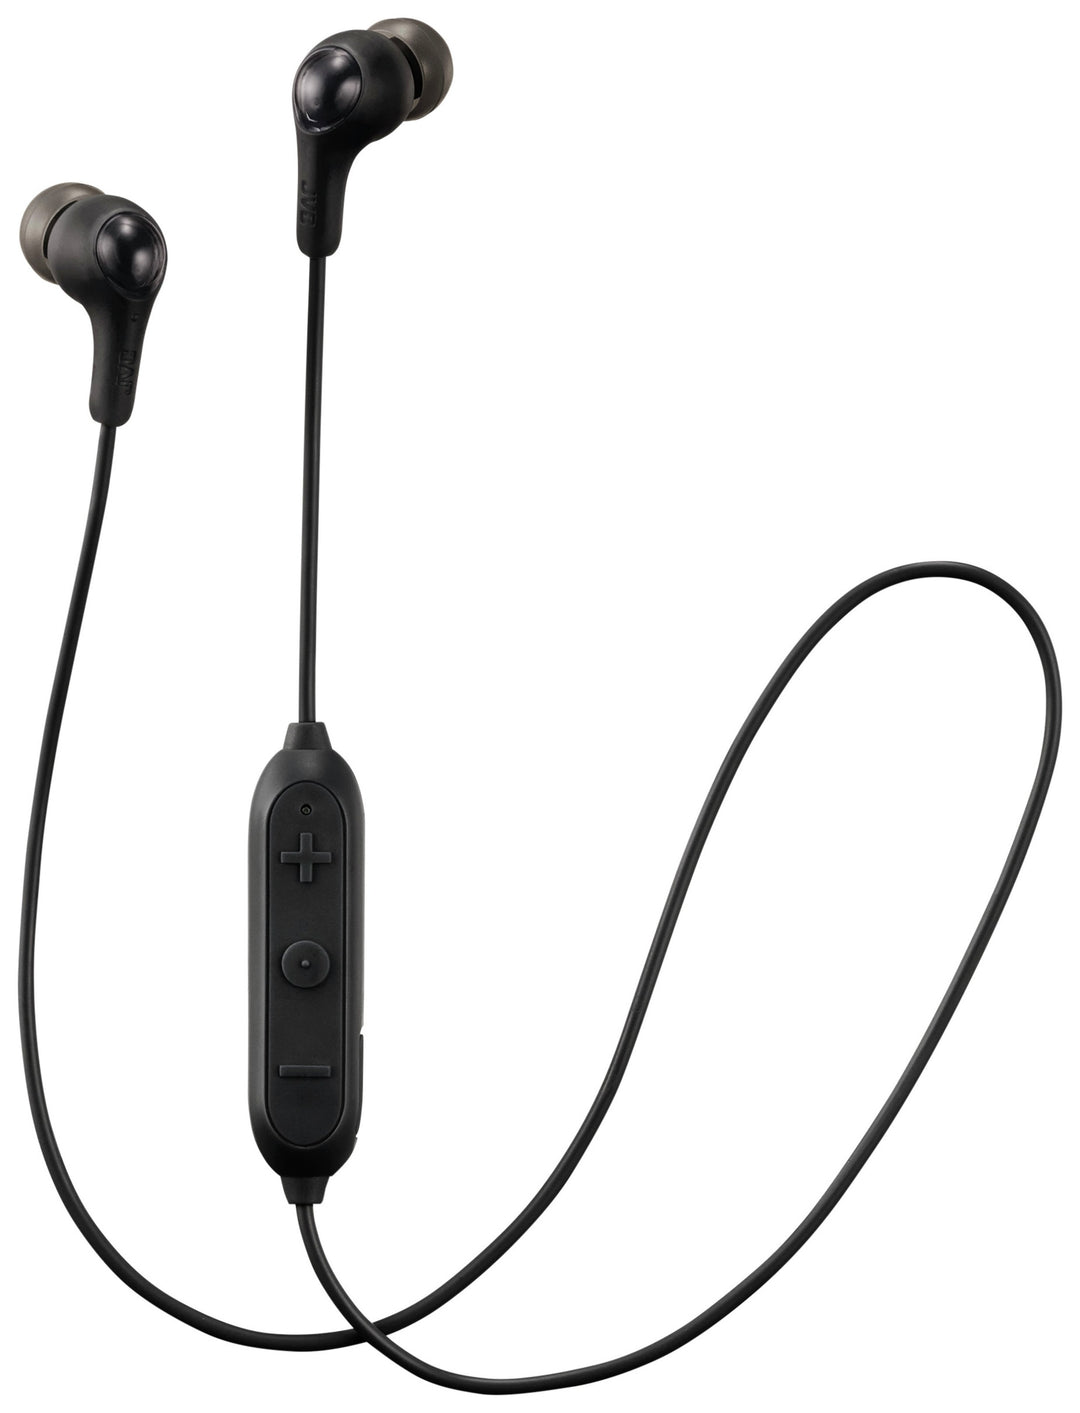 JVC HA-FX9 Gumy Wireless In-Ear Headphones